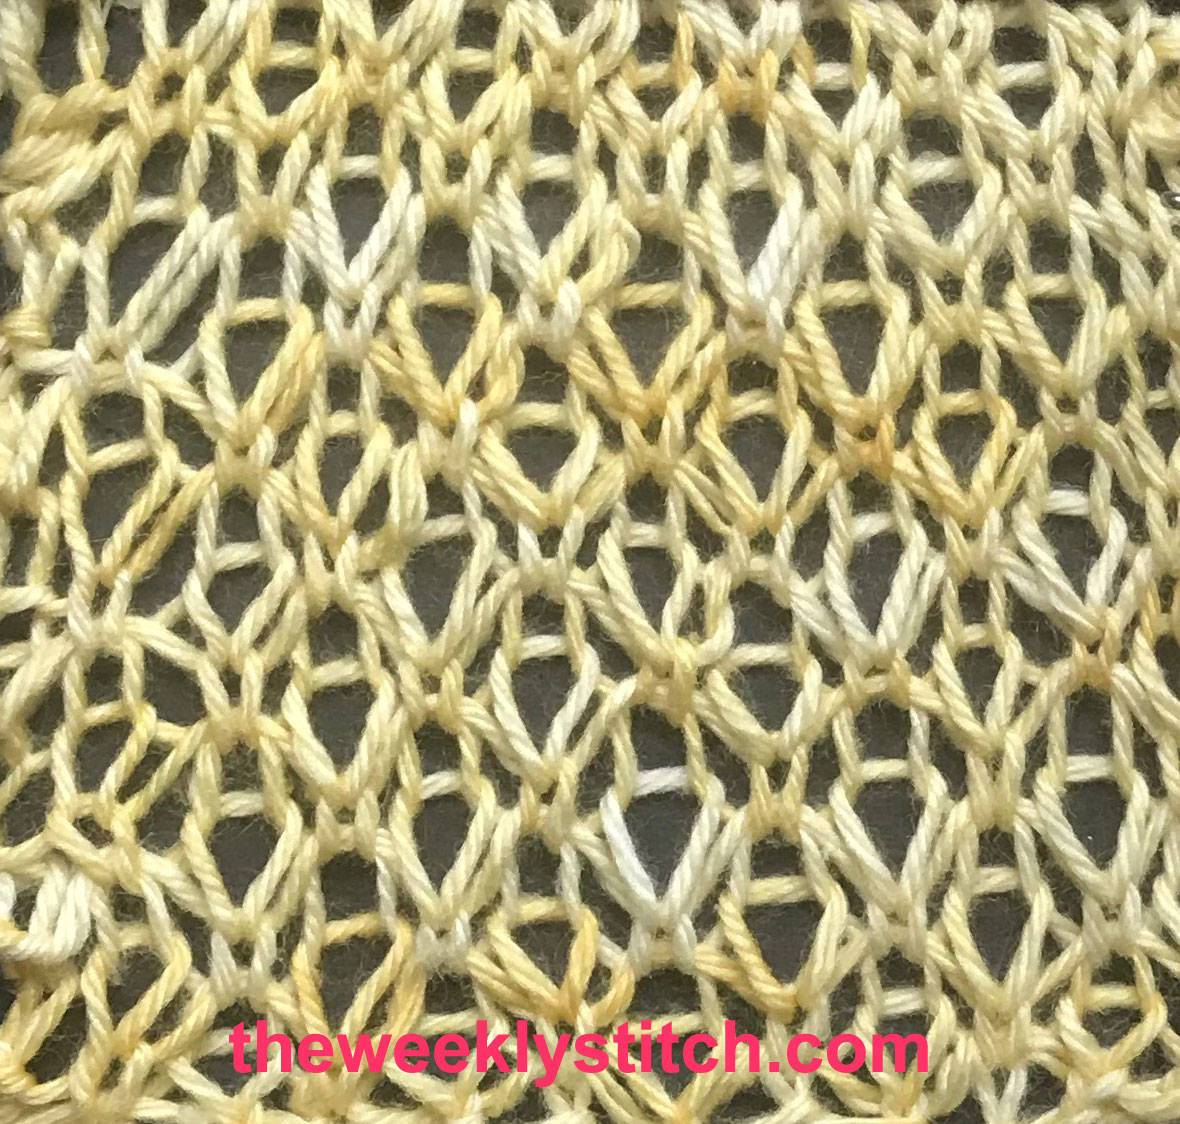 Honeycomb Knitting Stitch Pattern Honeycomb Seed Stitch The Weekly Stitch